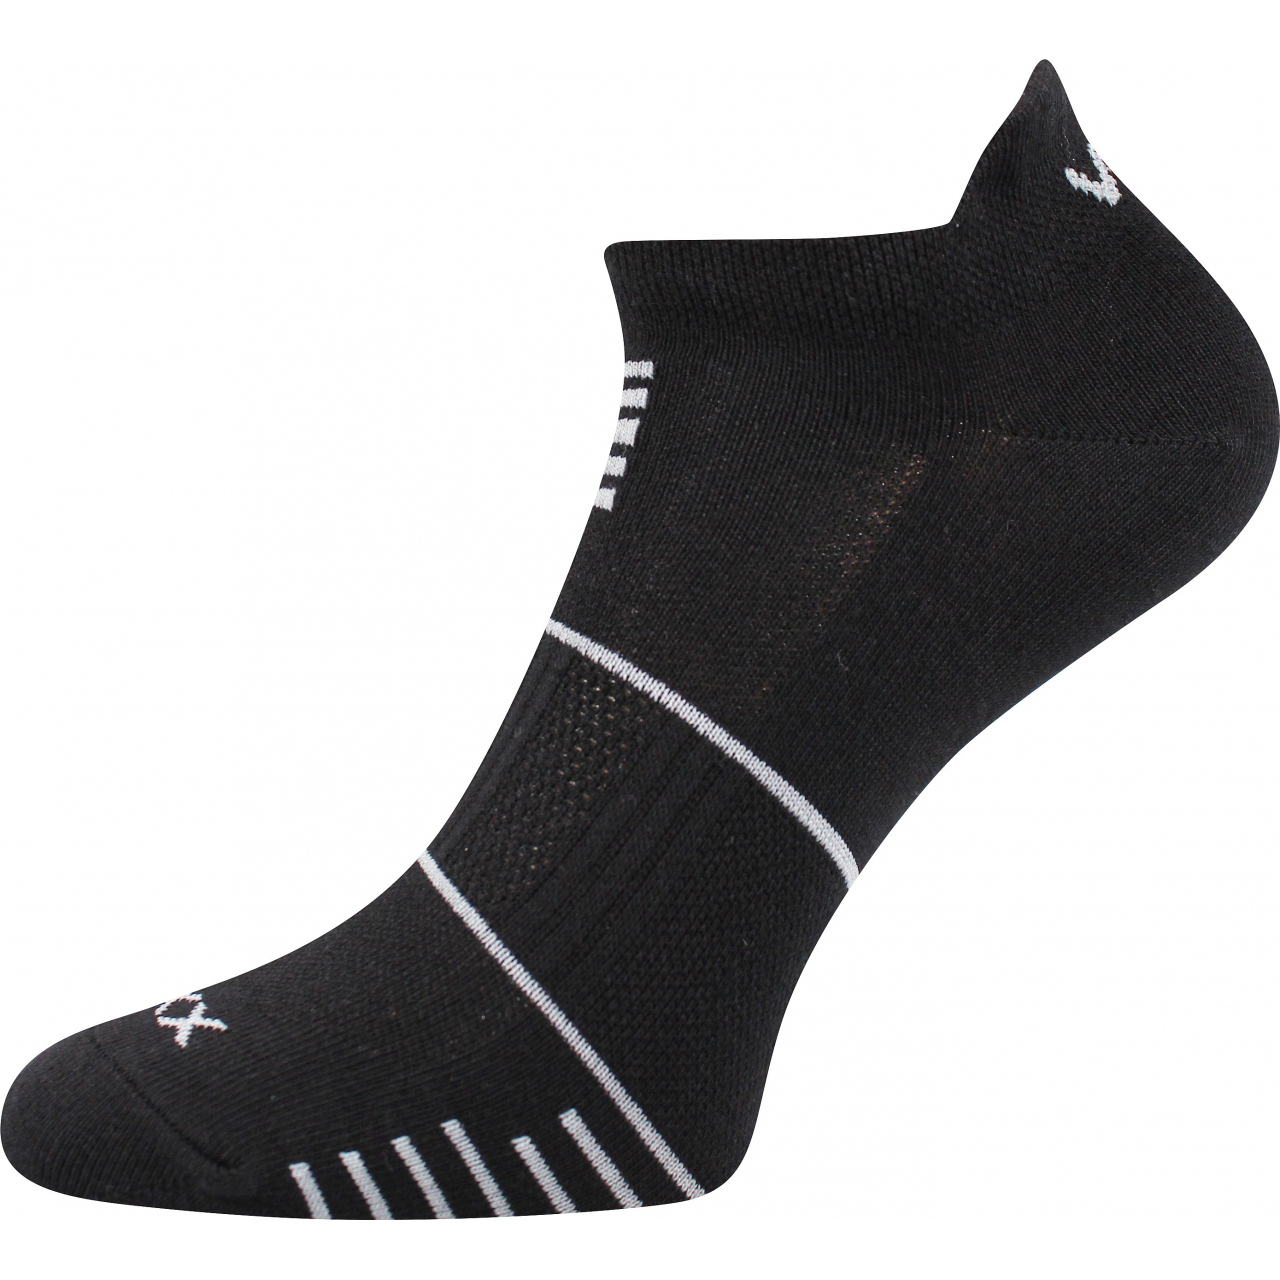 Ponožky sportovní unisex Voxx Avenar - černé, 39-42